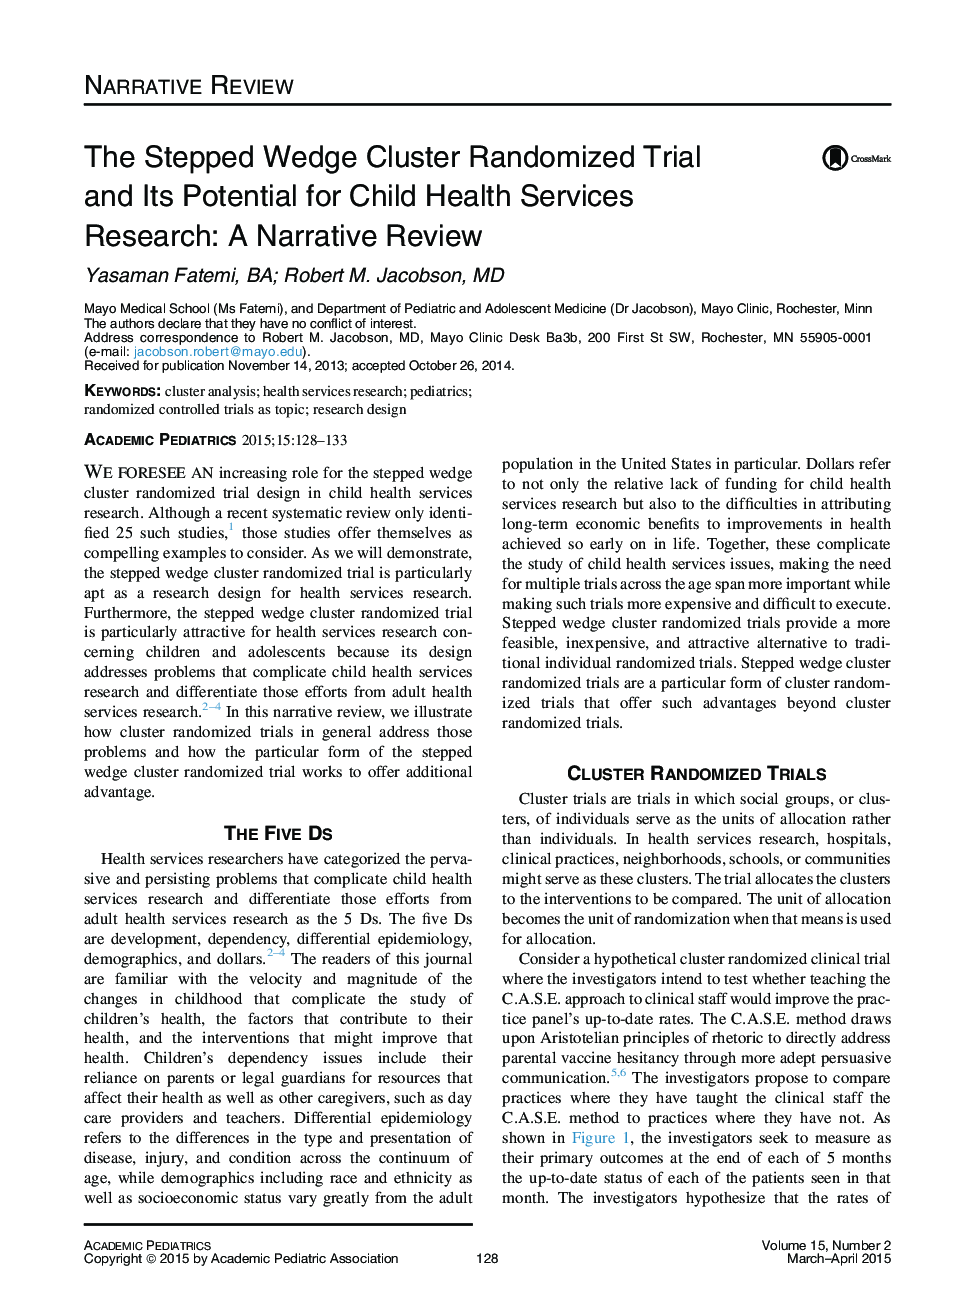 محاکمه تصادفی قاعده گام به گام و توان بالقوه آن برای تحقیقات خدمات بهداشتی در کودکان: نقد روایت 